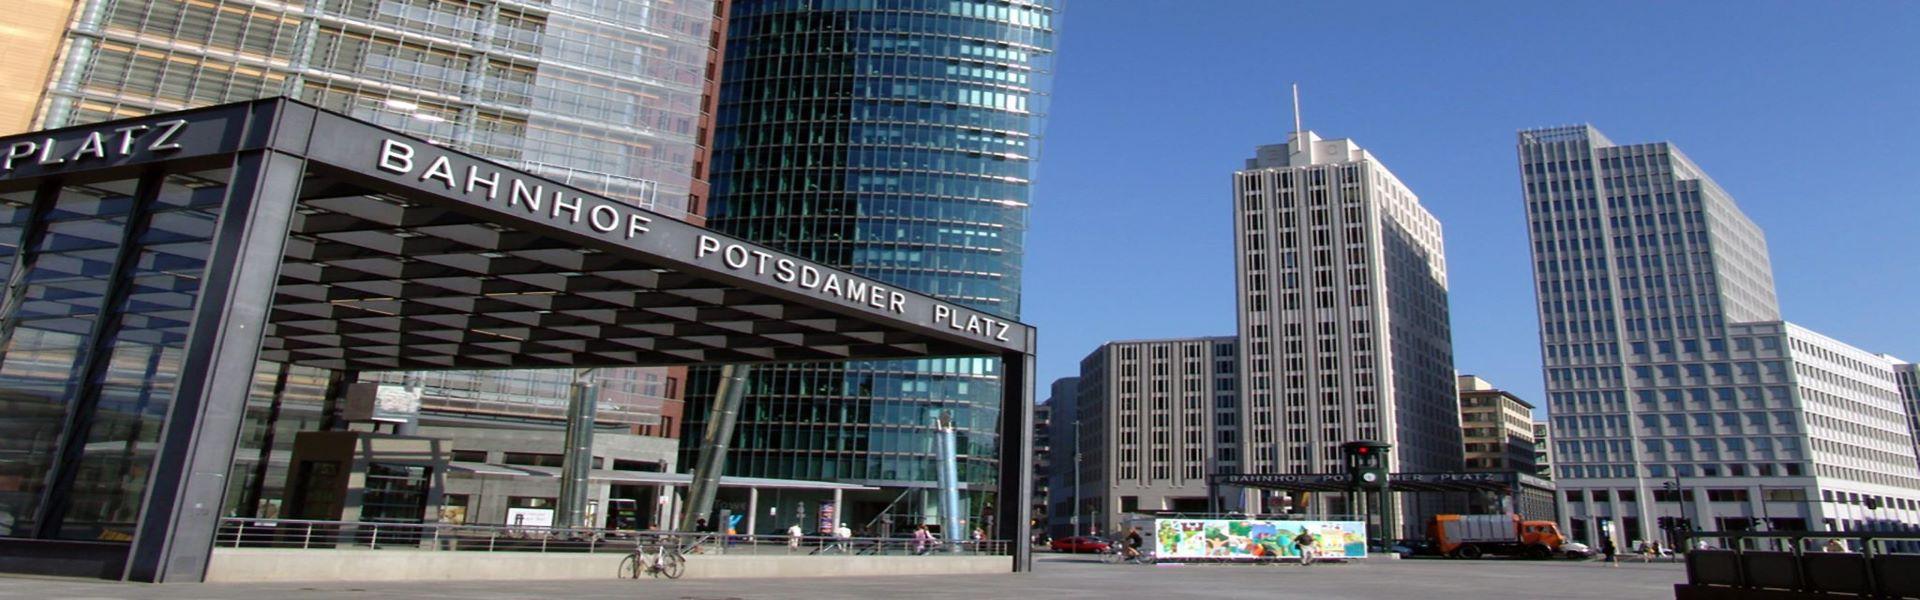 پوتسدامر پلاتز  Potsdamer Platz